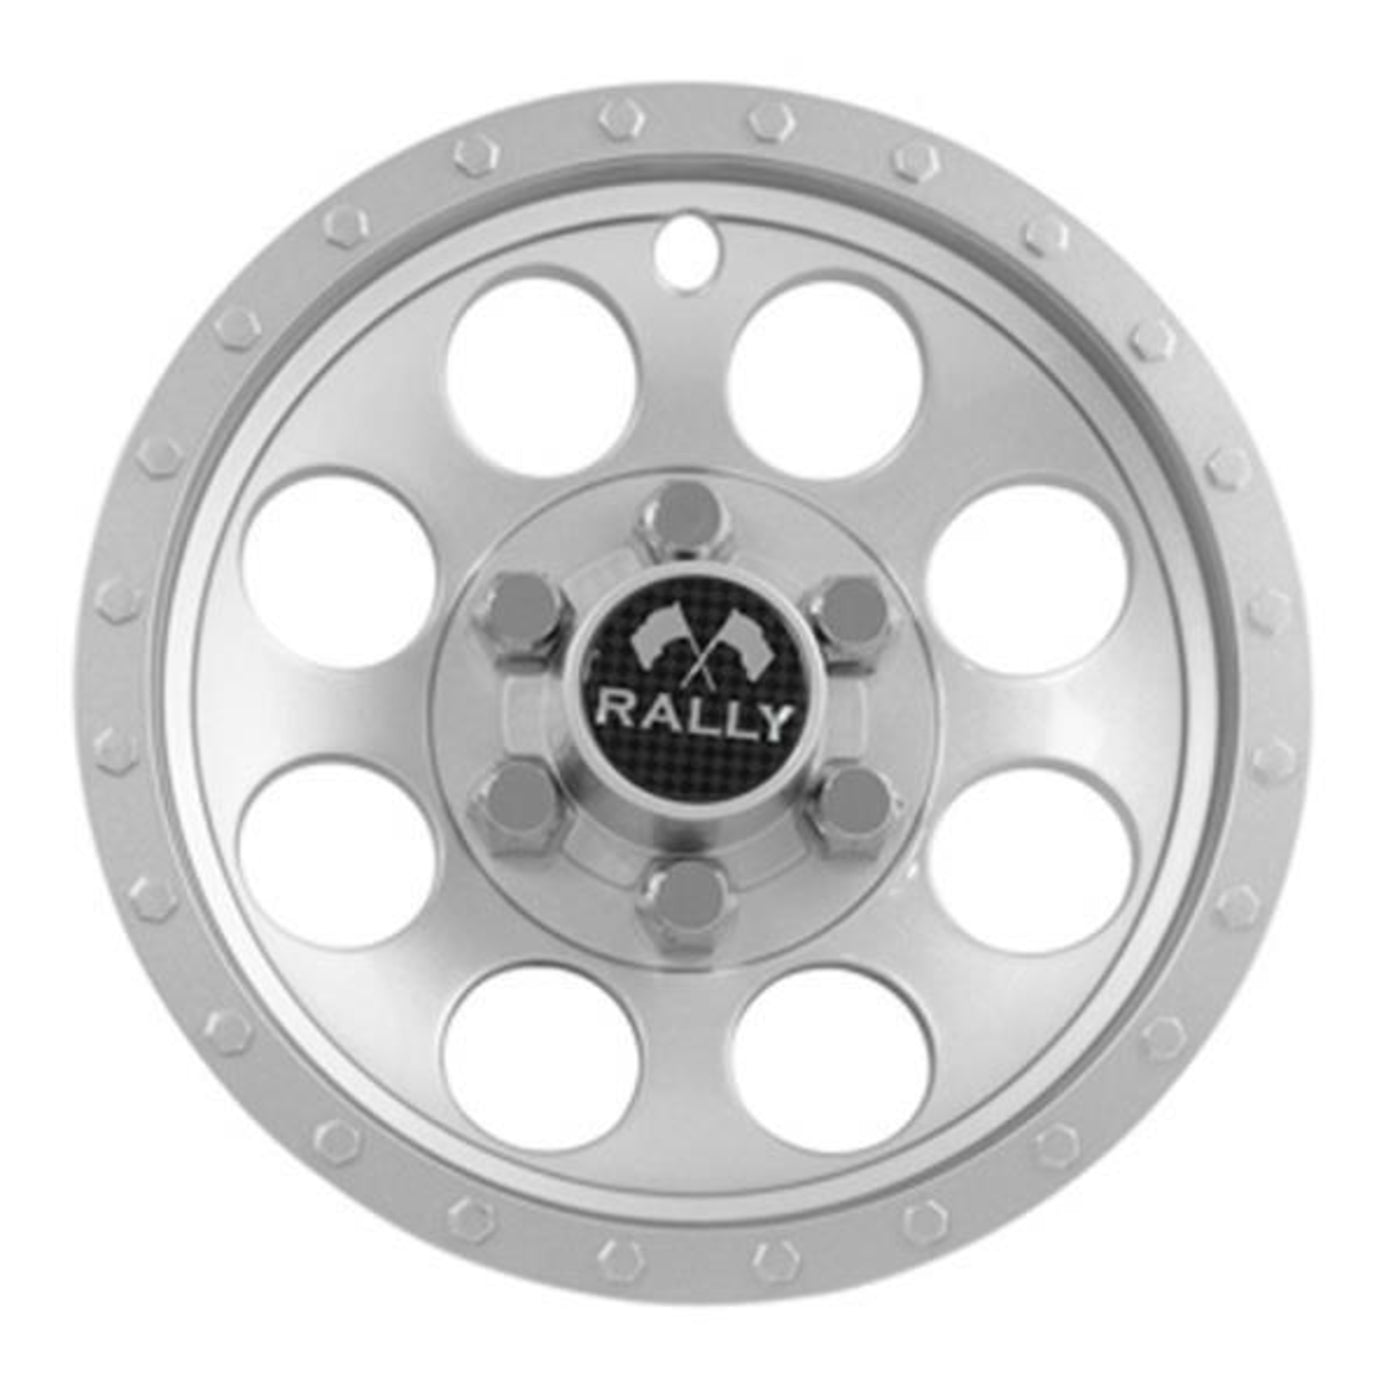 10" Silver Metallic Rally Wheel Cover